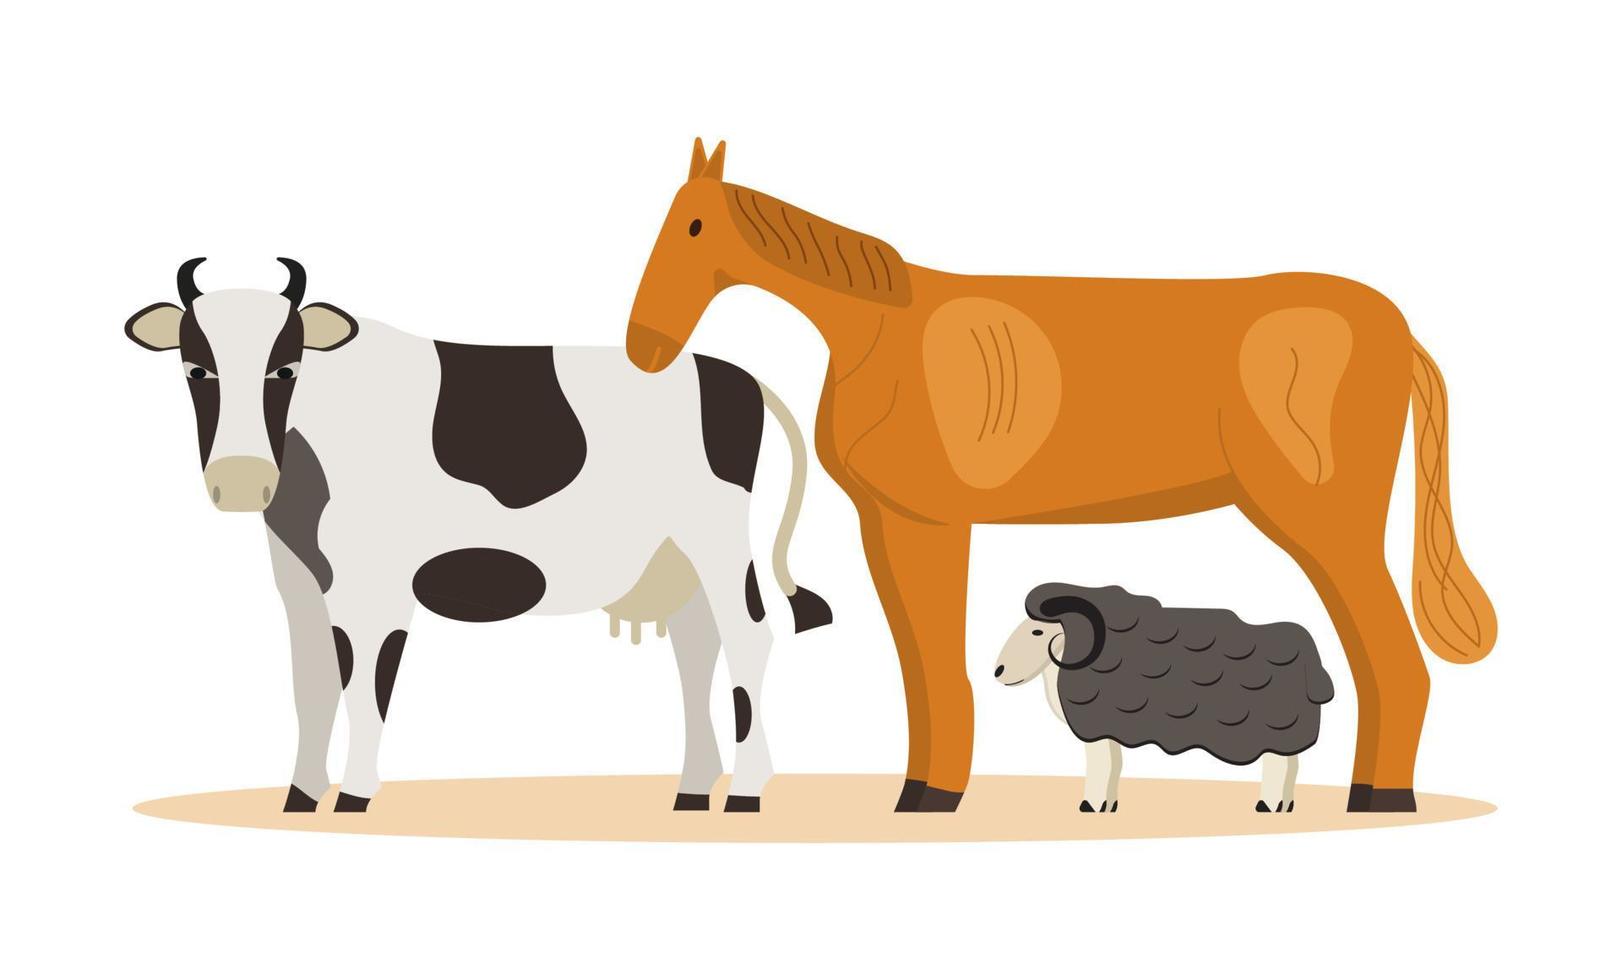 Nutztier-Konzeptvektor. Schaf, Pferd, Kuh werden auf dem weißen Hintergrund gezeigt. braune Augen mit weißen Flecken am Körper. Bio-Öko-Bauernhof oder tierärztlicher Hilfsdienst vektor